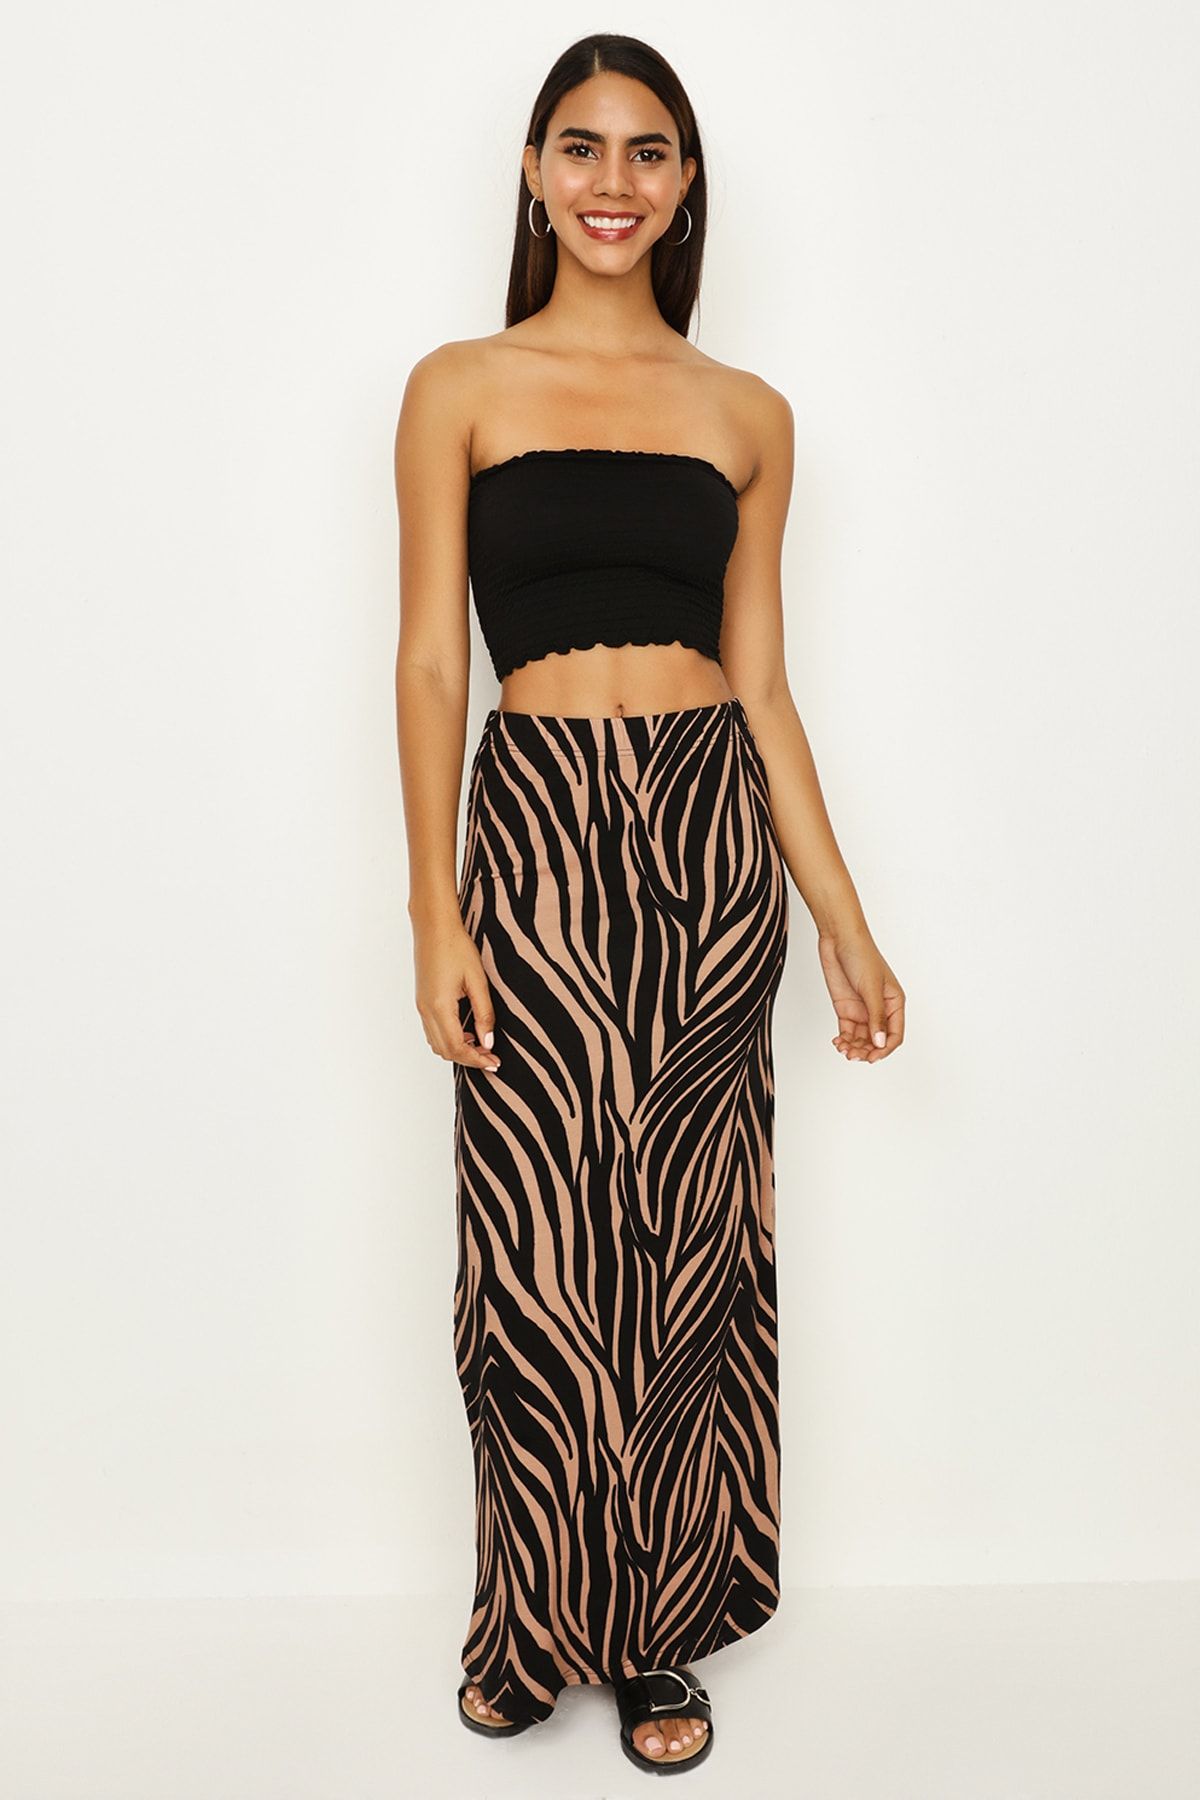 Select Moda Kadın Zebra Desenli Maxi Etek